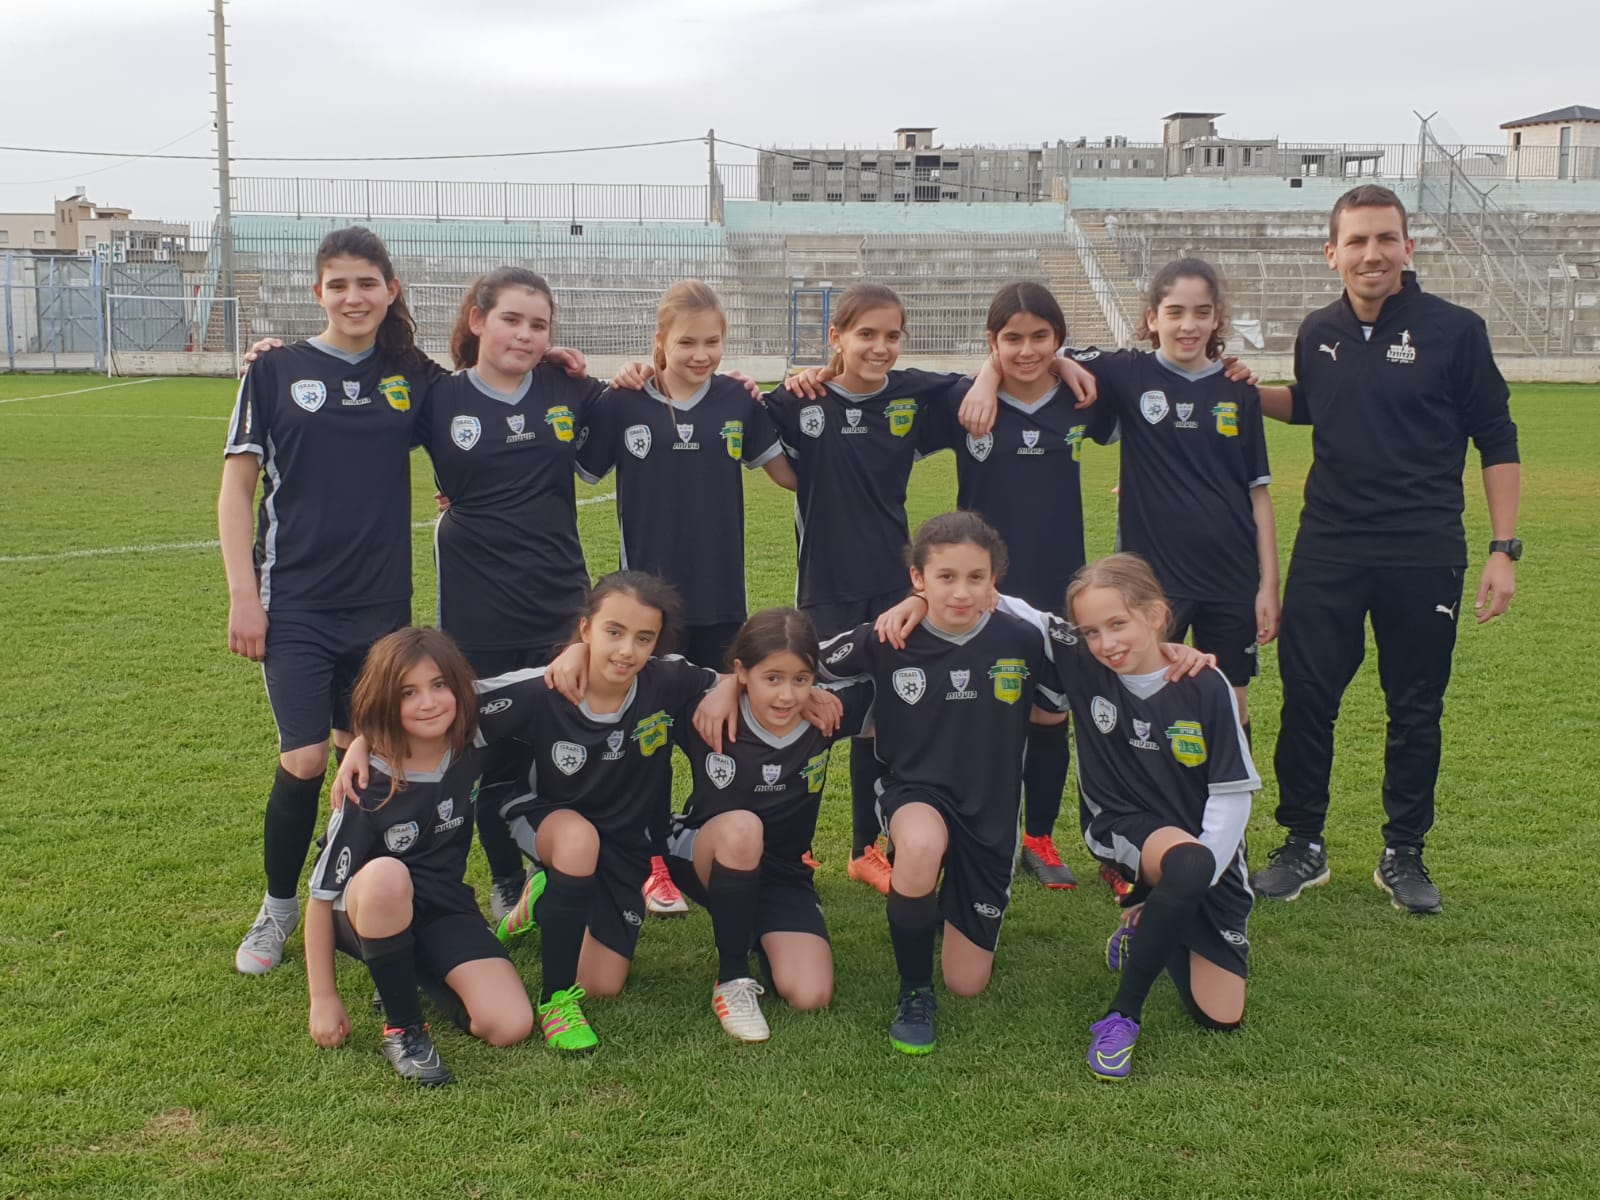 שחקניות הכדורגל הצעירות של הגליל העליון זכו במקום הראשון בטורניר הראשון לעונה